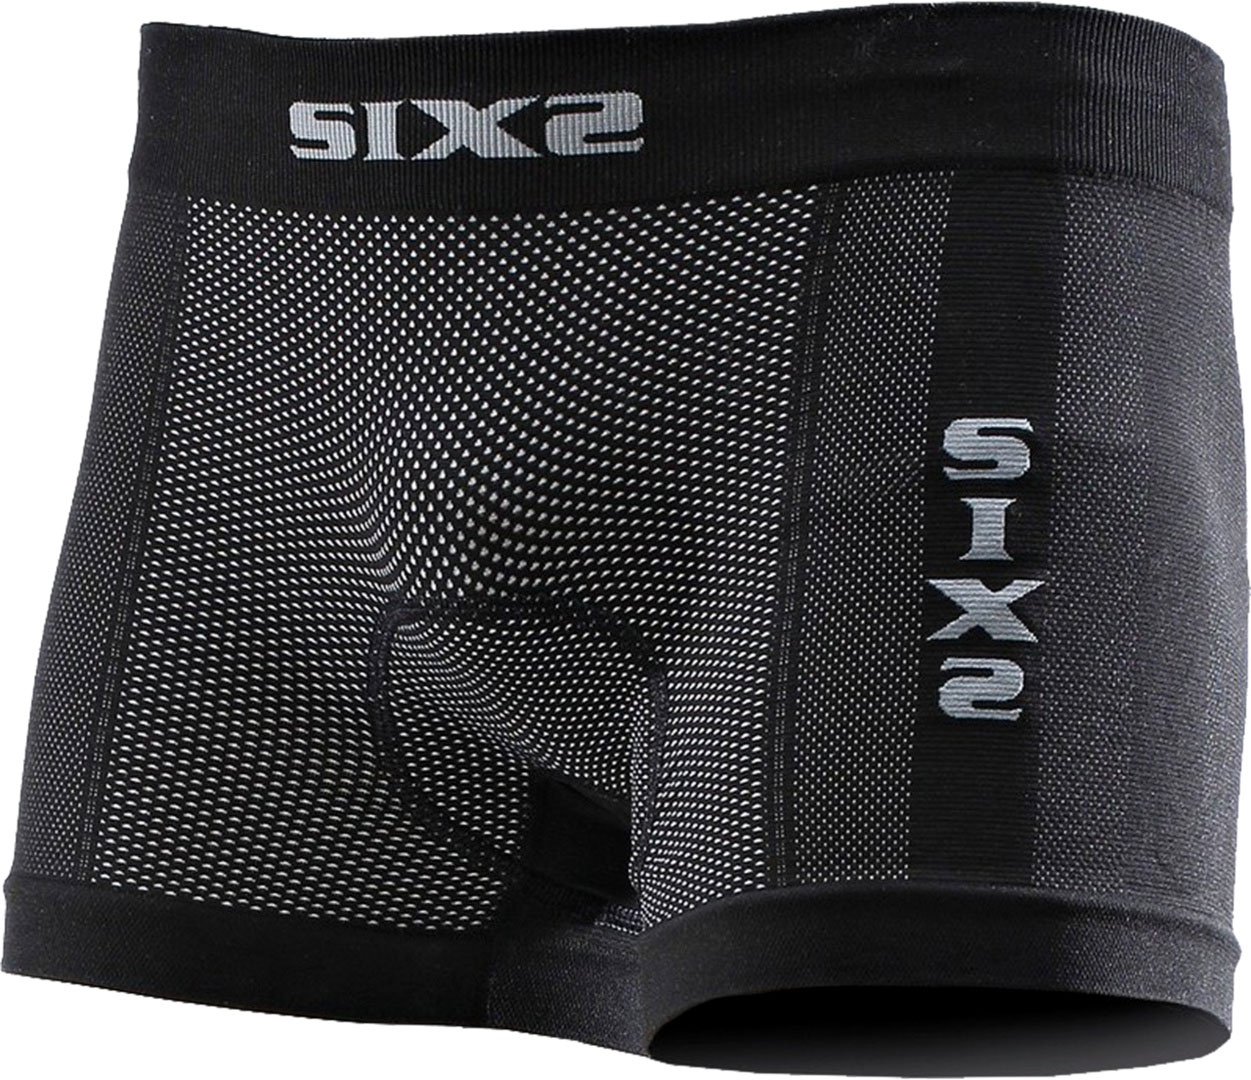 Sixs BOX2, caleçon unisexe - Noir - XS/S